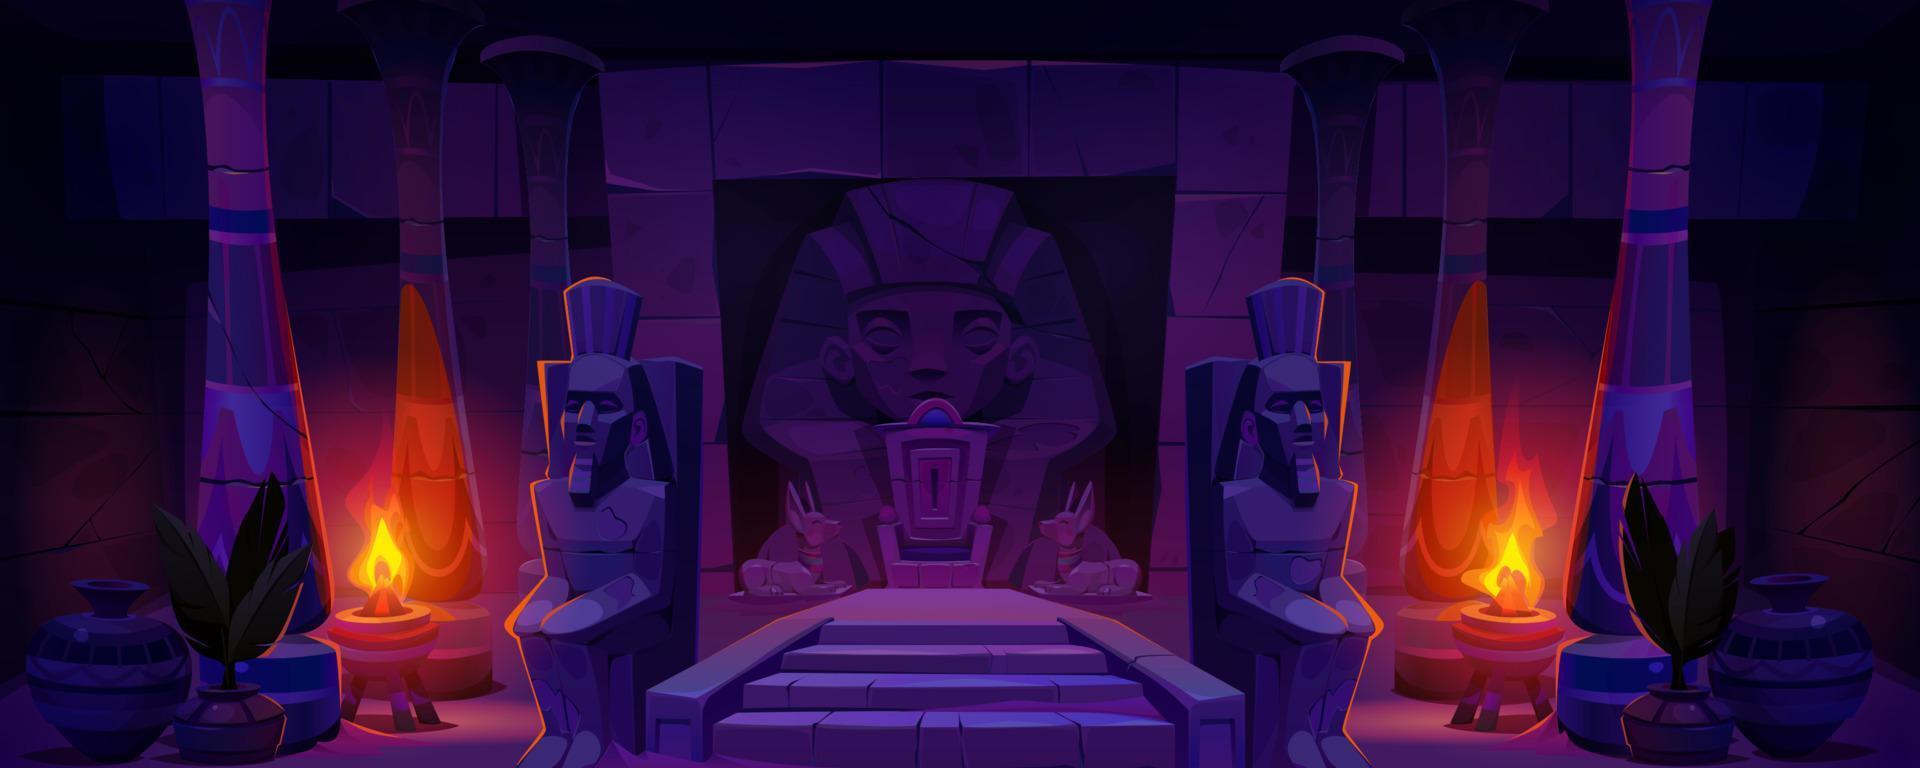 antiguo Egipto faraón trono templo dibujos animados vector